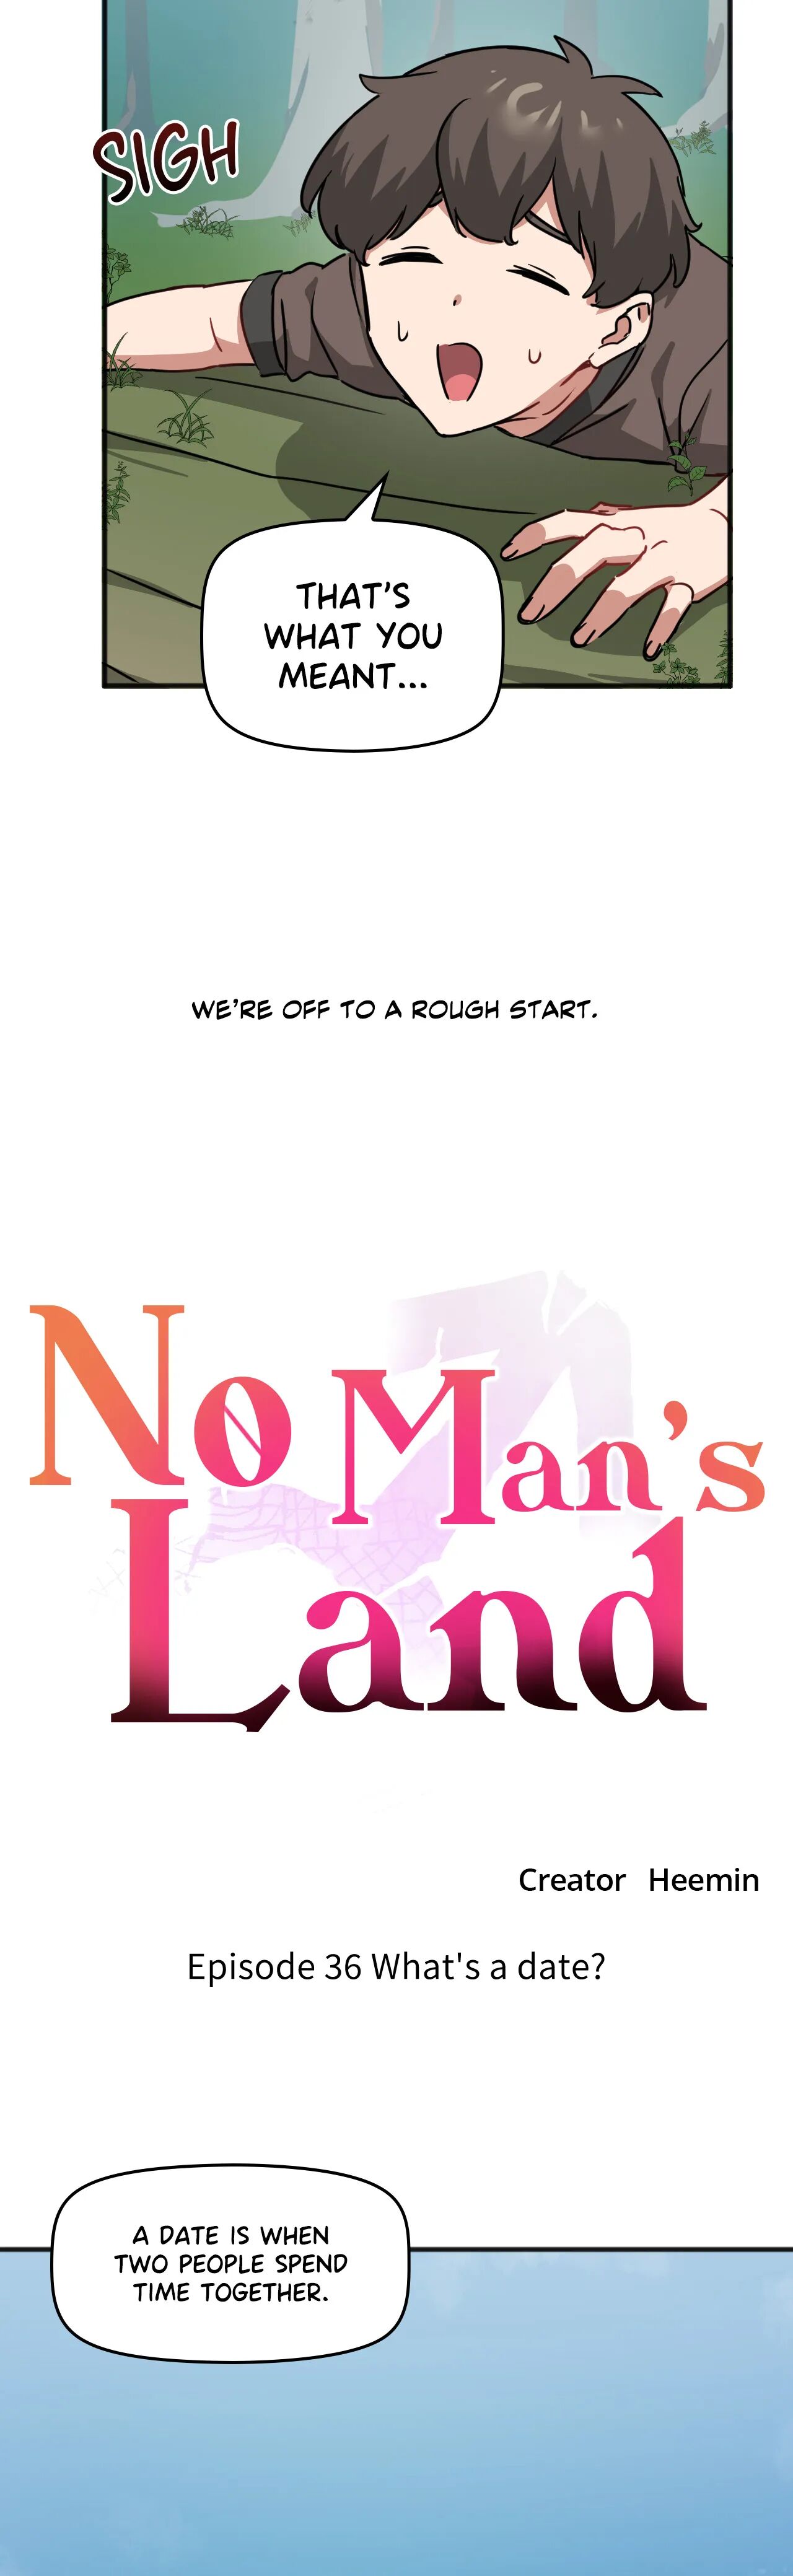 No Man’s Land NEW image